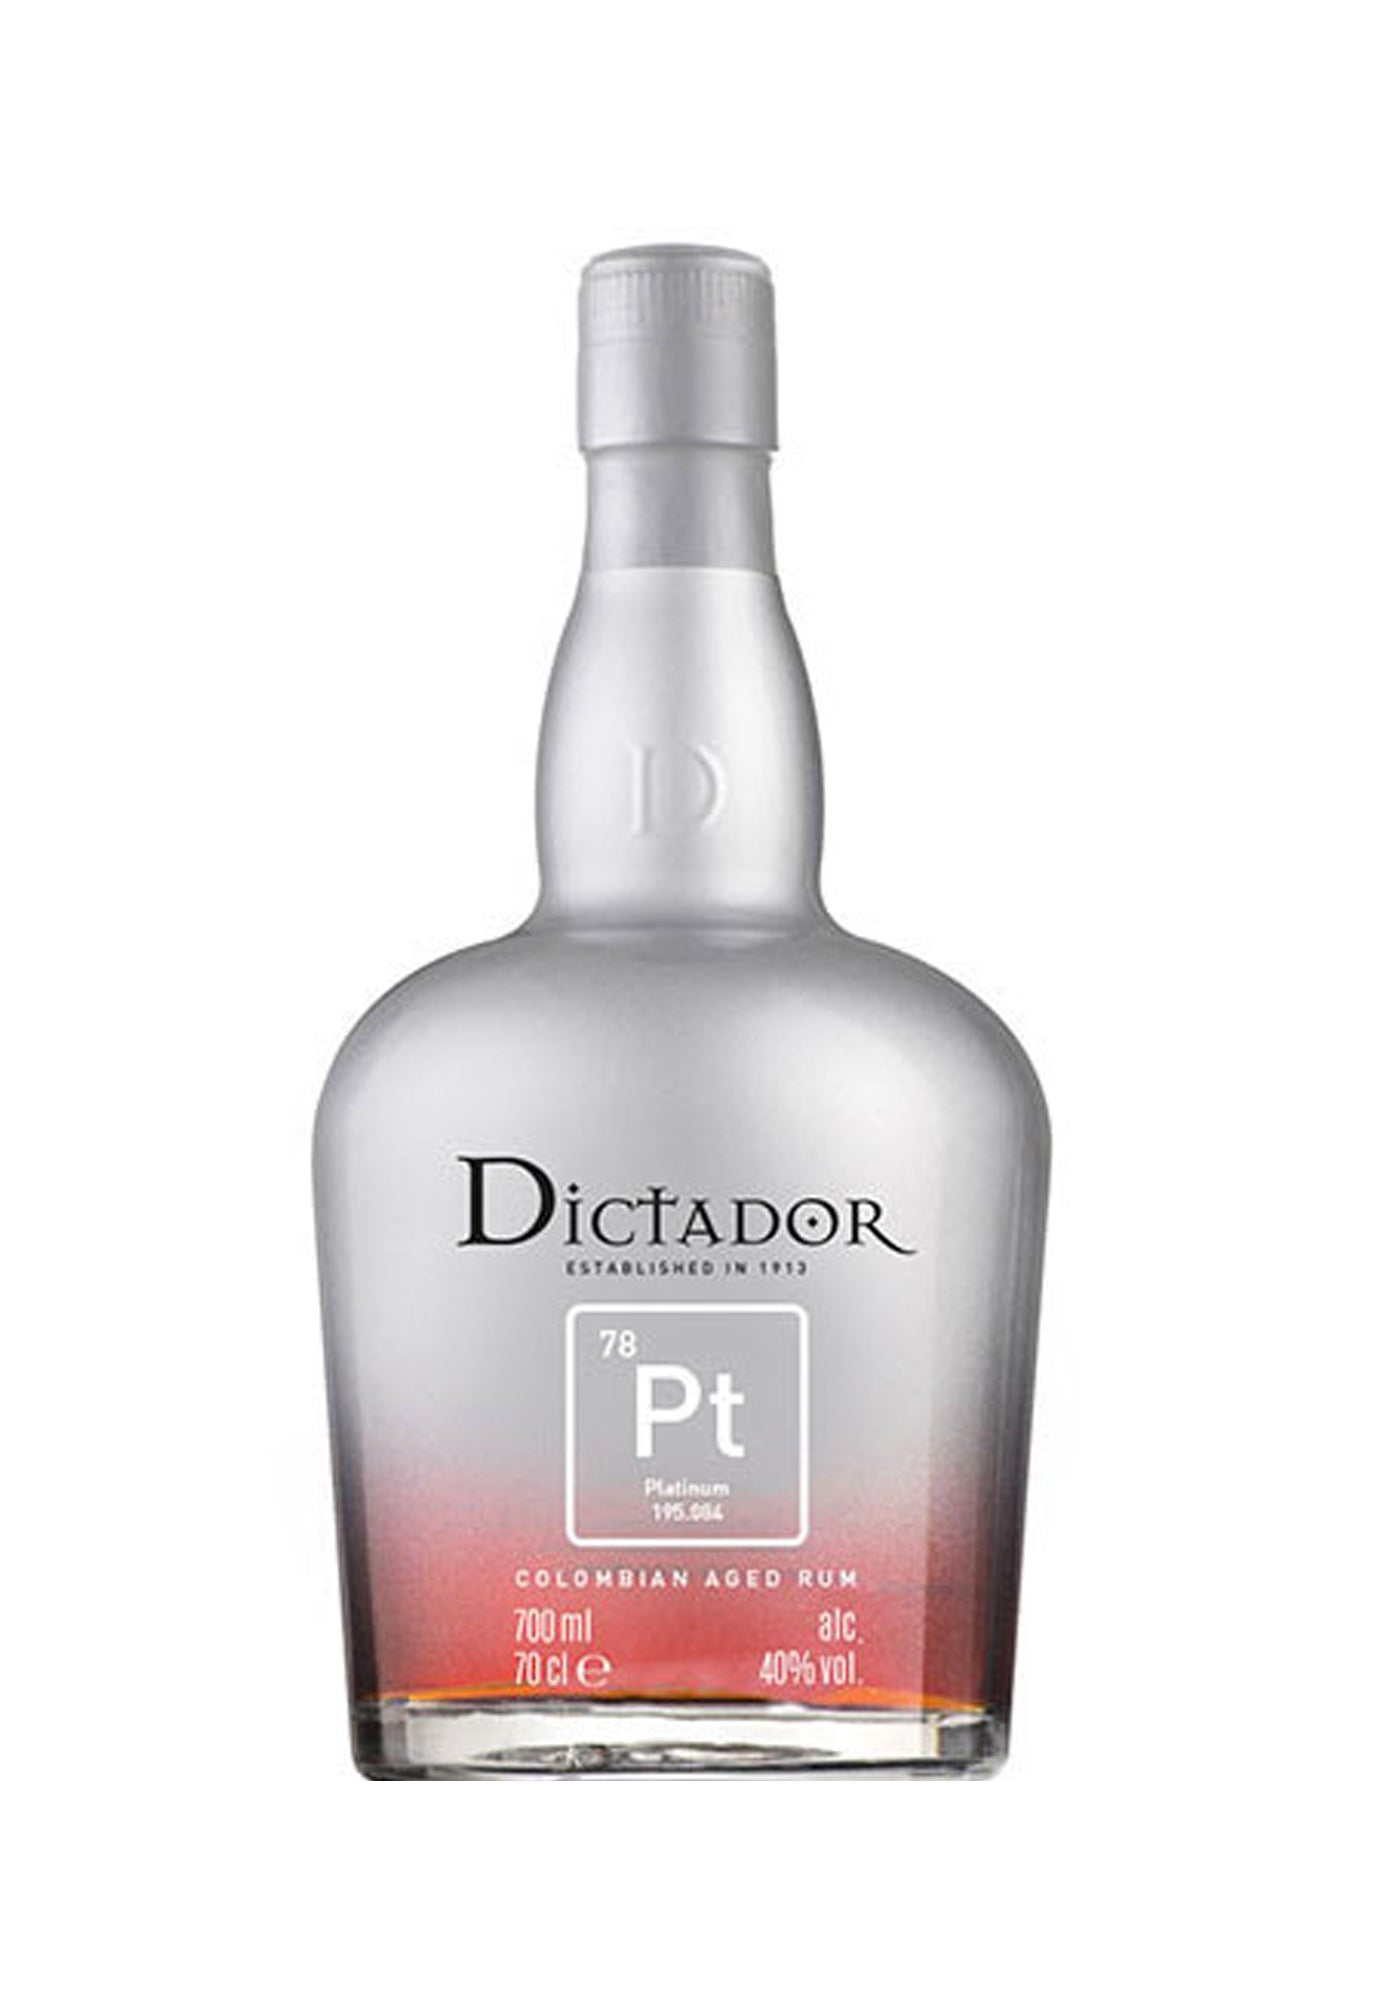 Dictador Platinum Rum